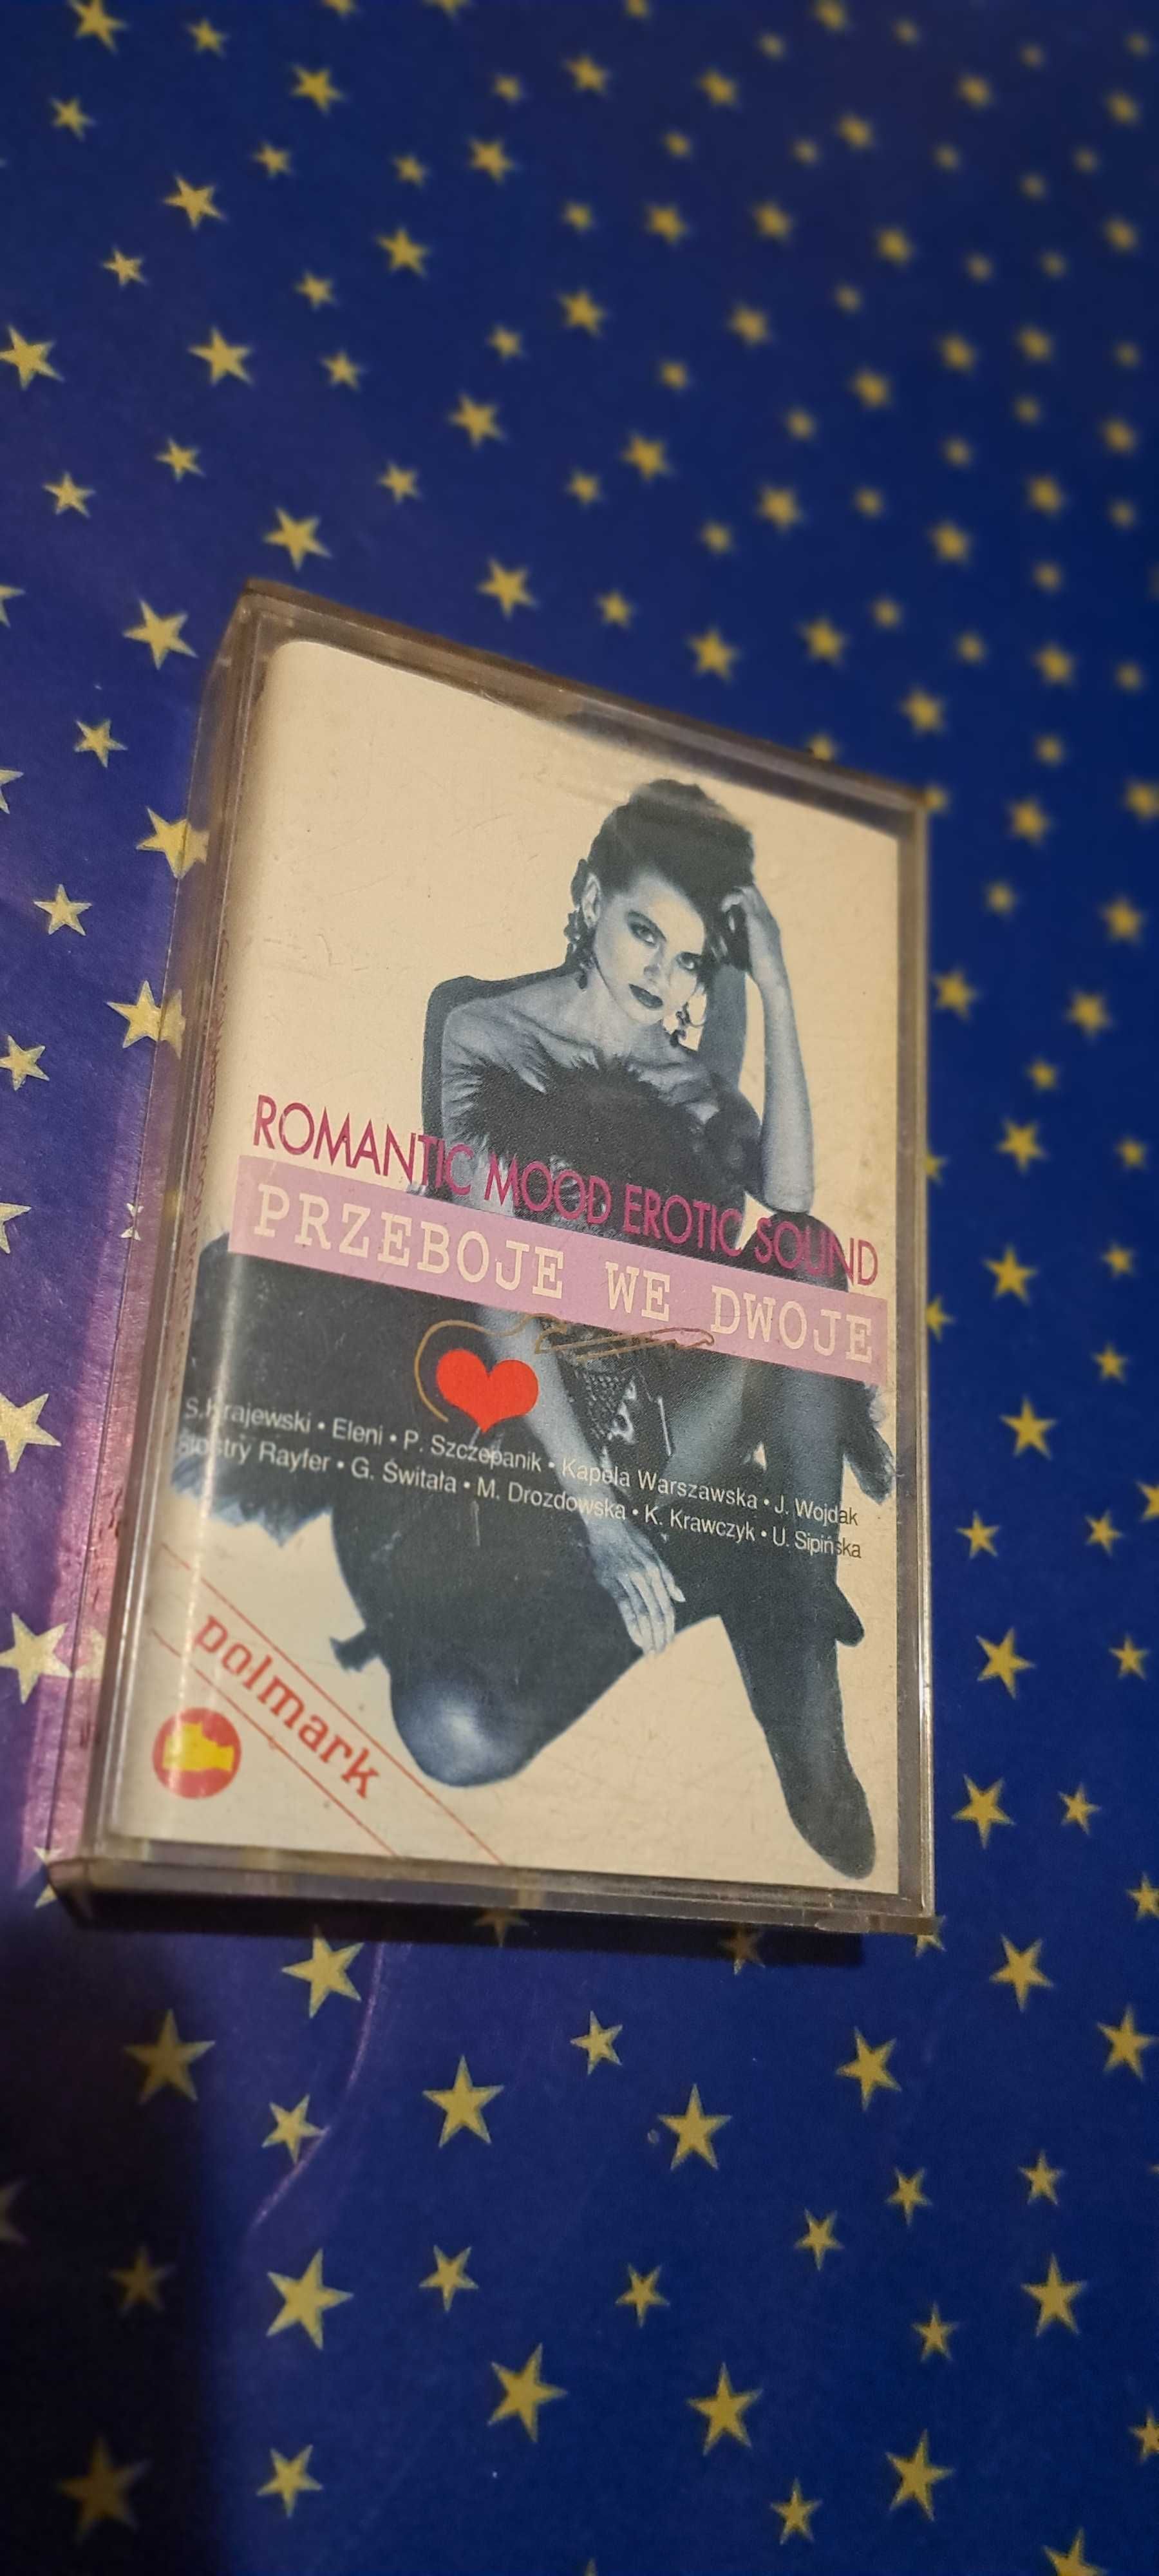 Romantyczne PRzeboje we dwoje  - kaseta audio - POLMARK